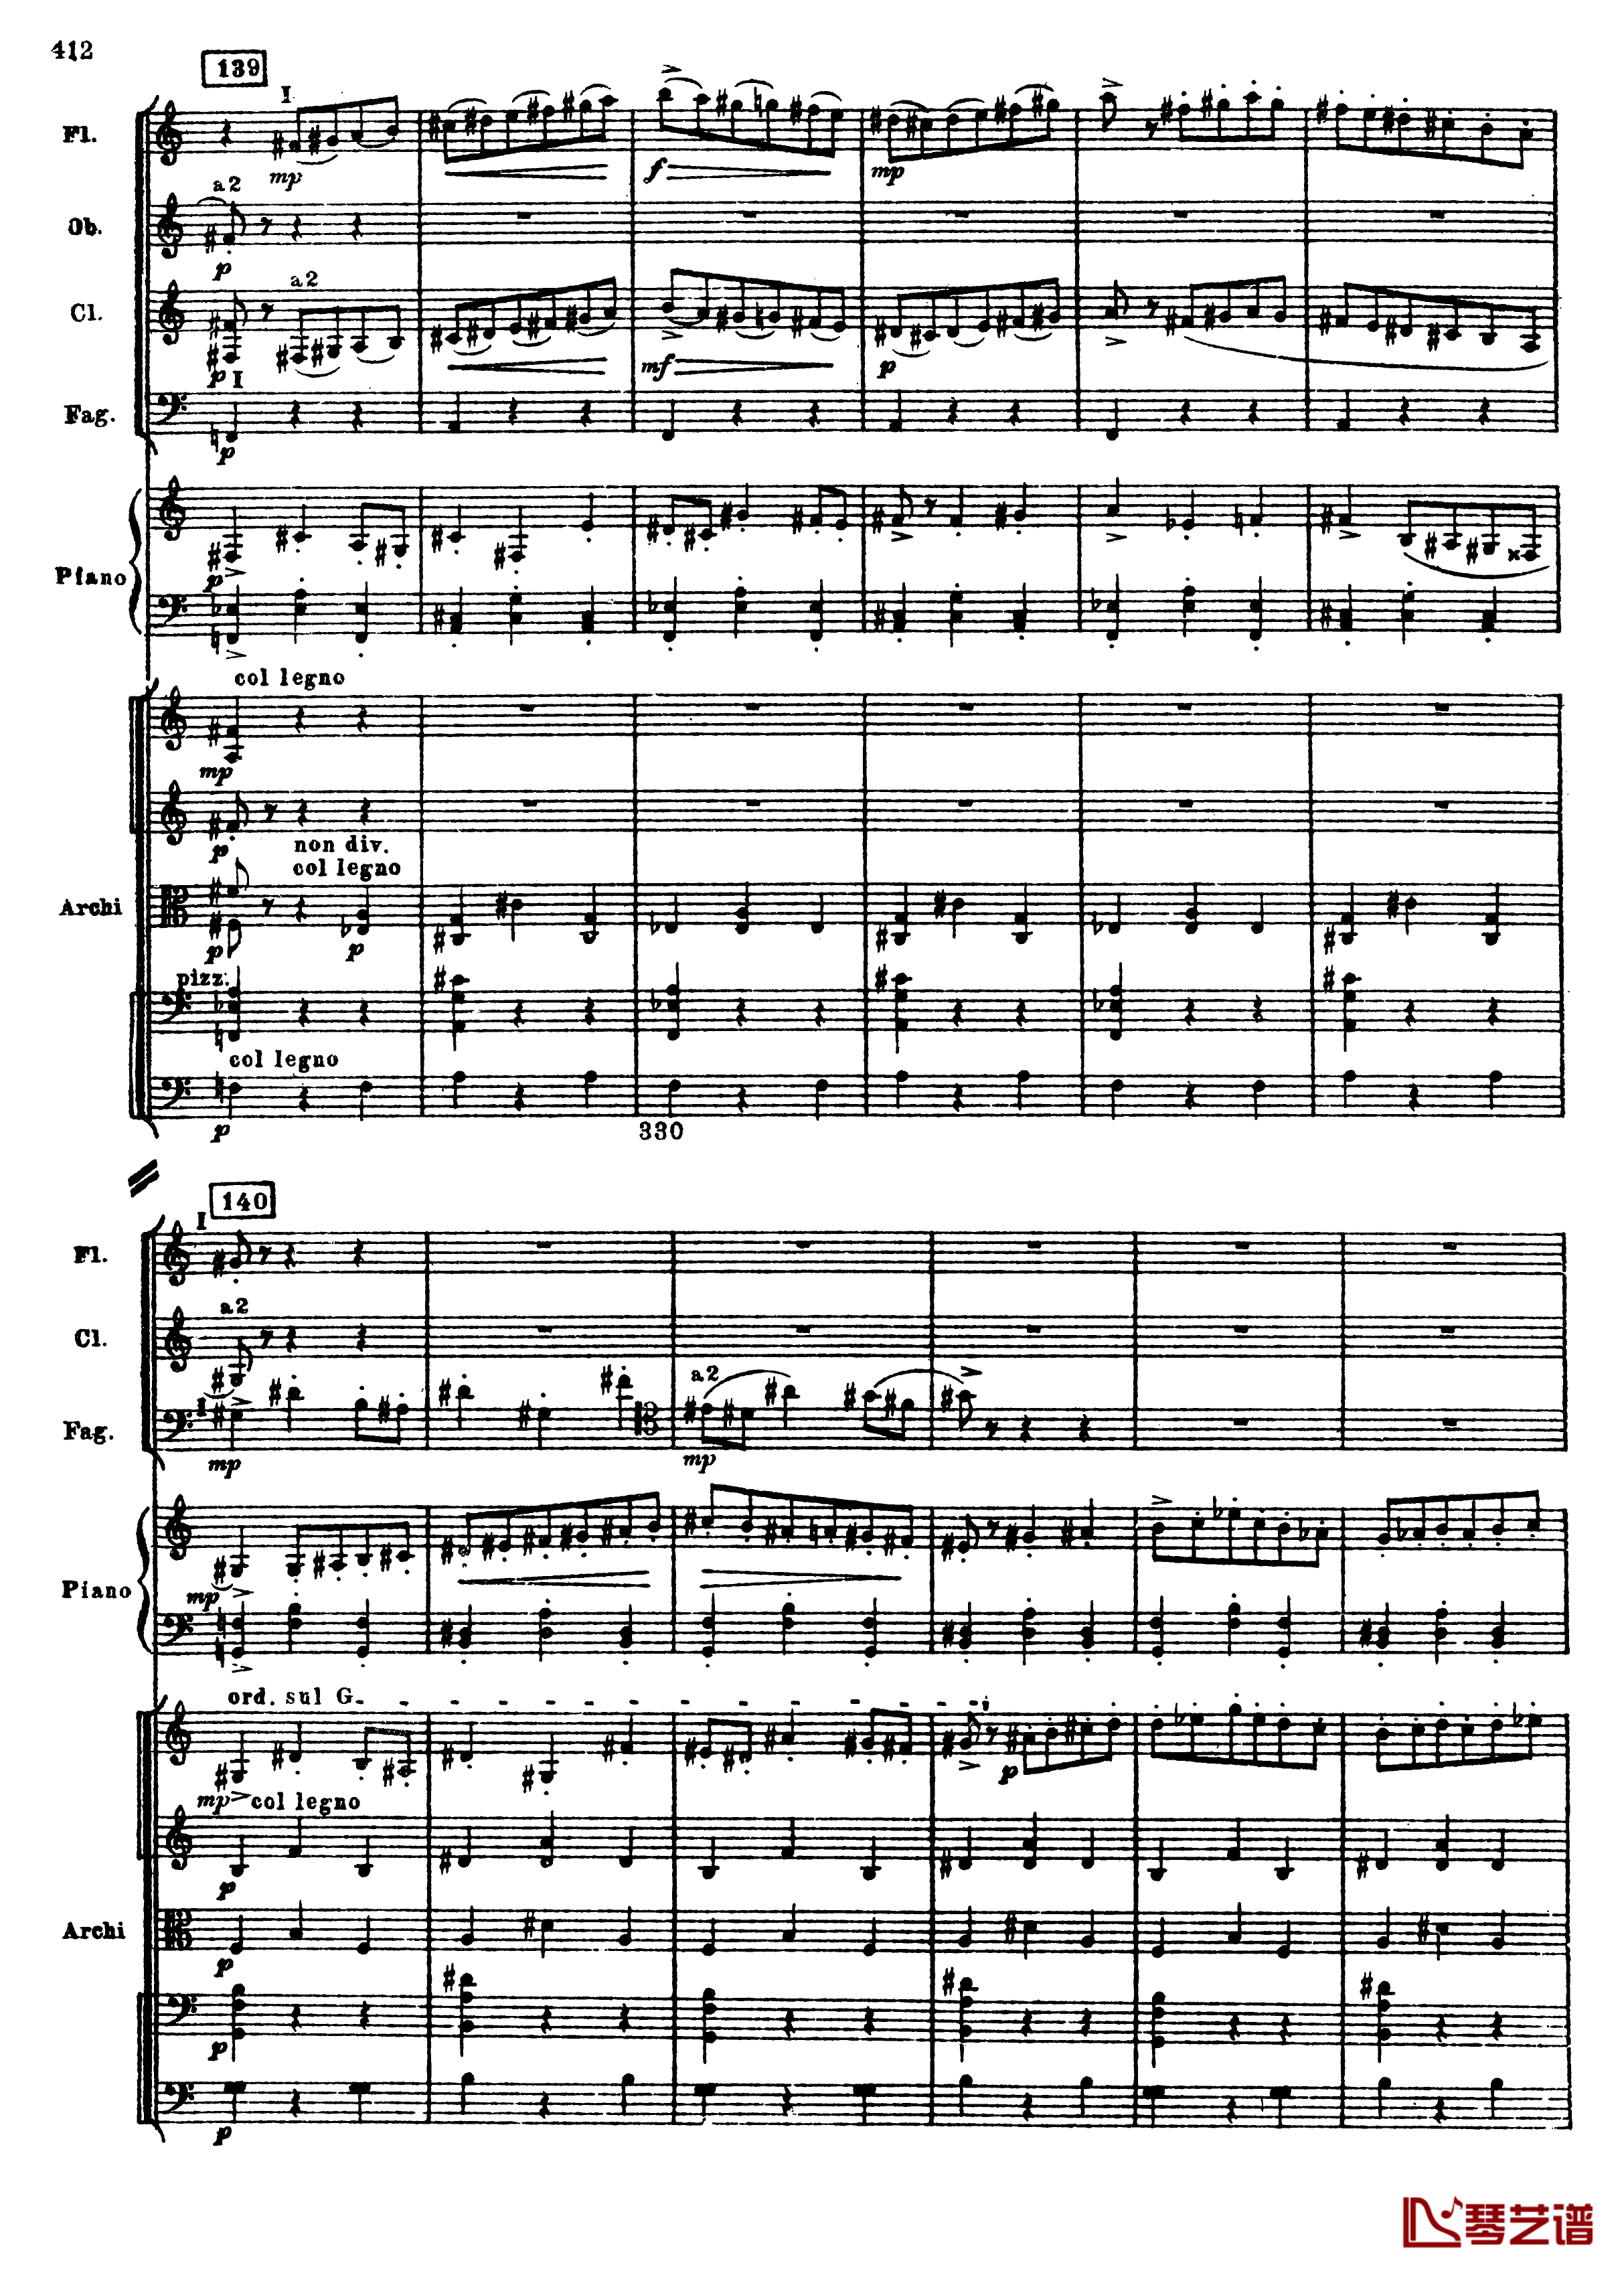 普罗科菲耶夫第三钢琴协奏曲钢琴谱-总谱-普罗科非耶夫144